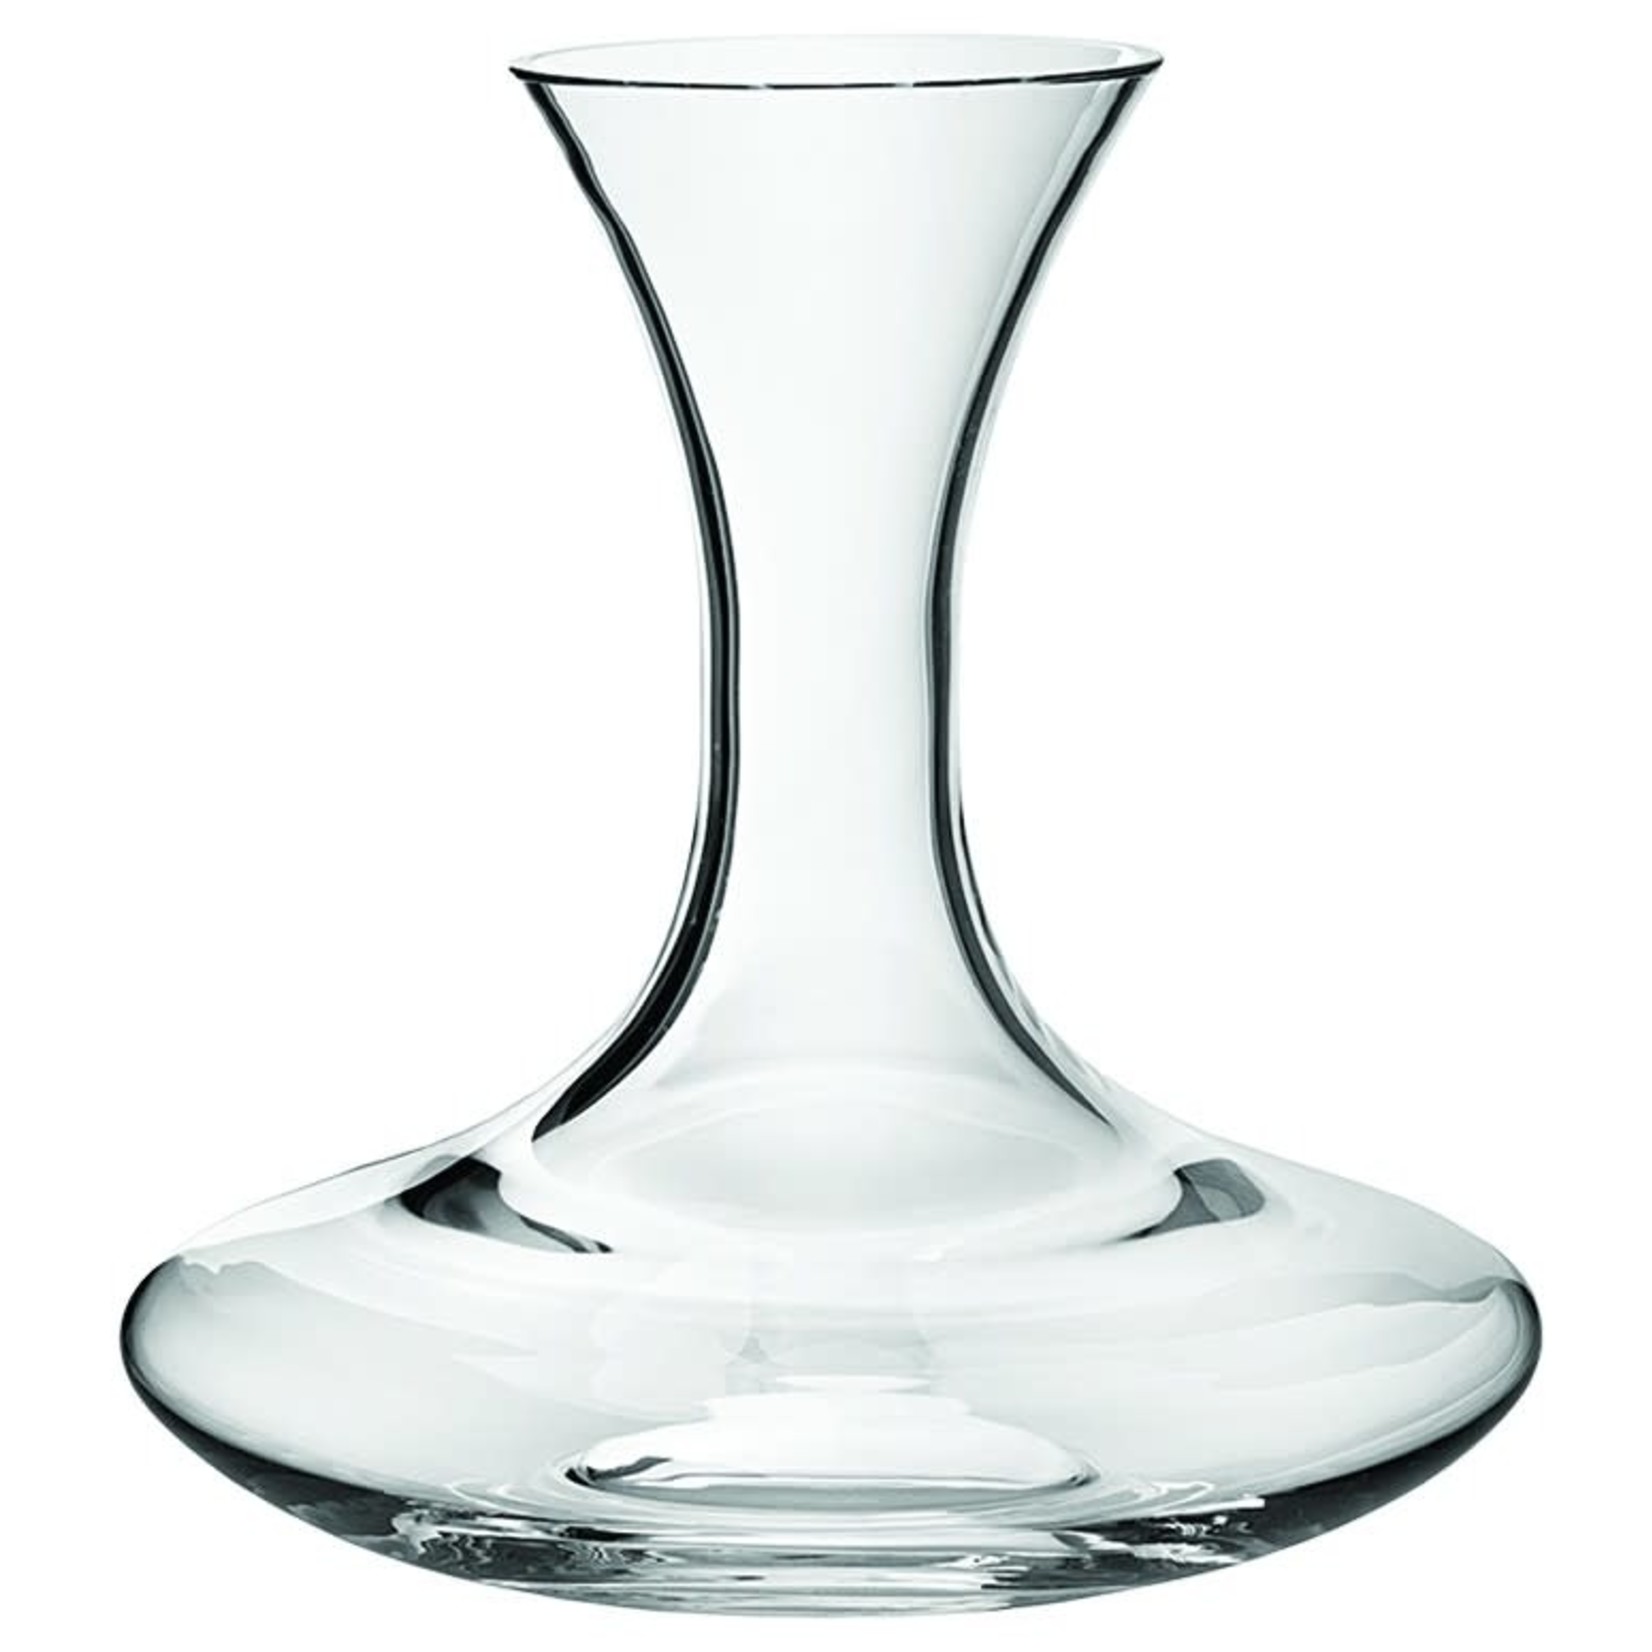 FRANMARA 20-9474 Fran 80 oz  Pomerol Decanter Glass Clear